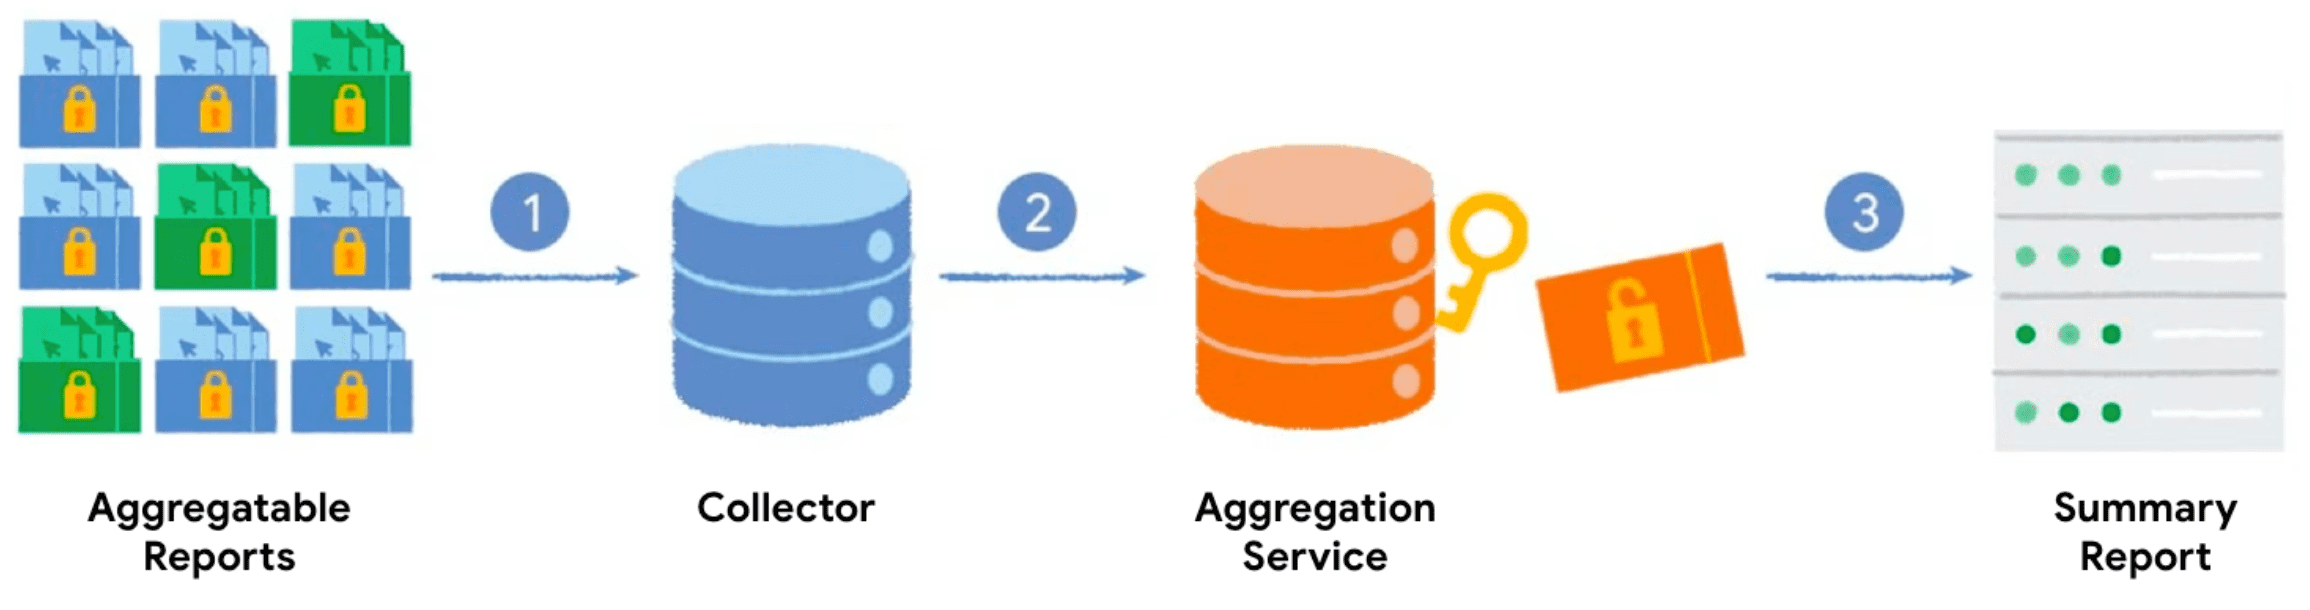 Daten fließen vom Client zum Collector und dann zum Aggregationsdienst, um einen zusammenfassenden Bericht zu generieren.